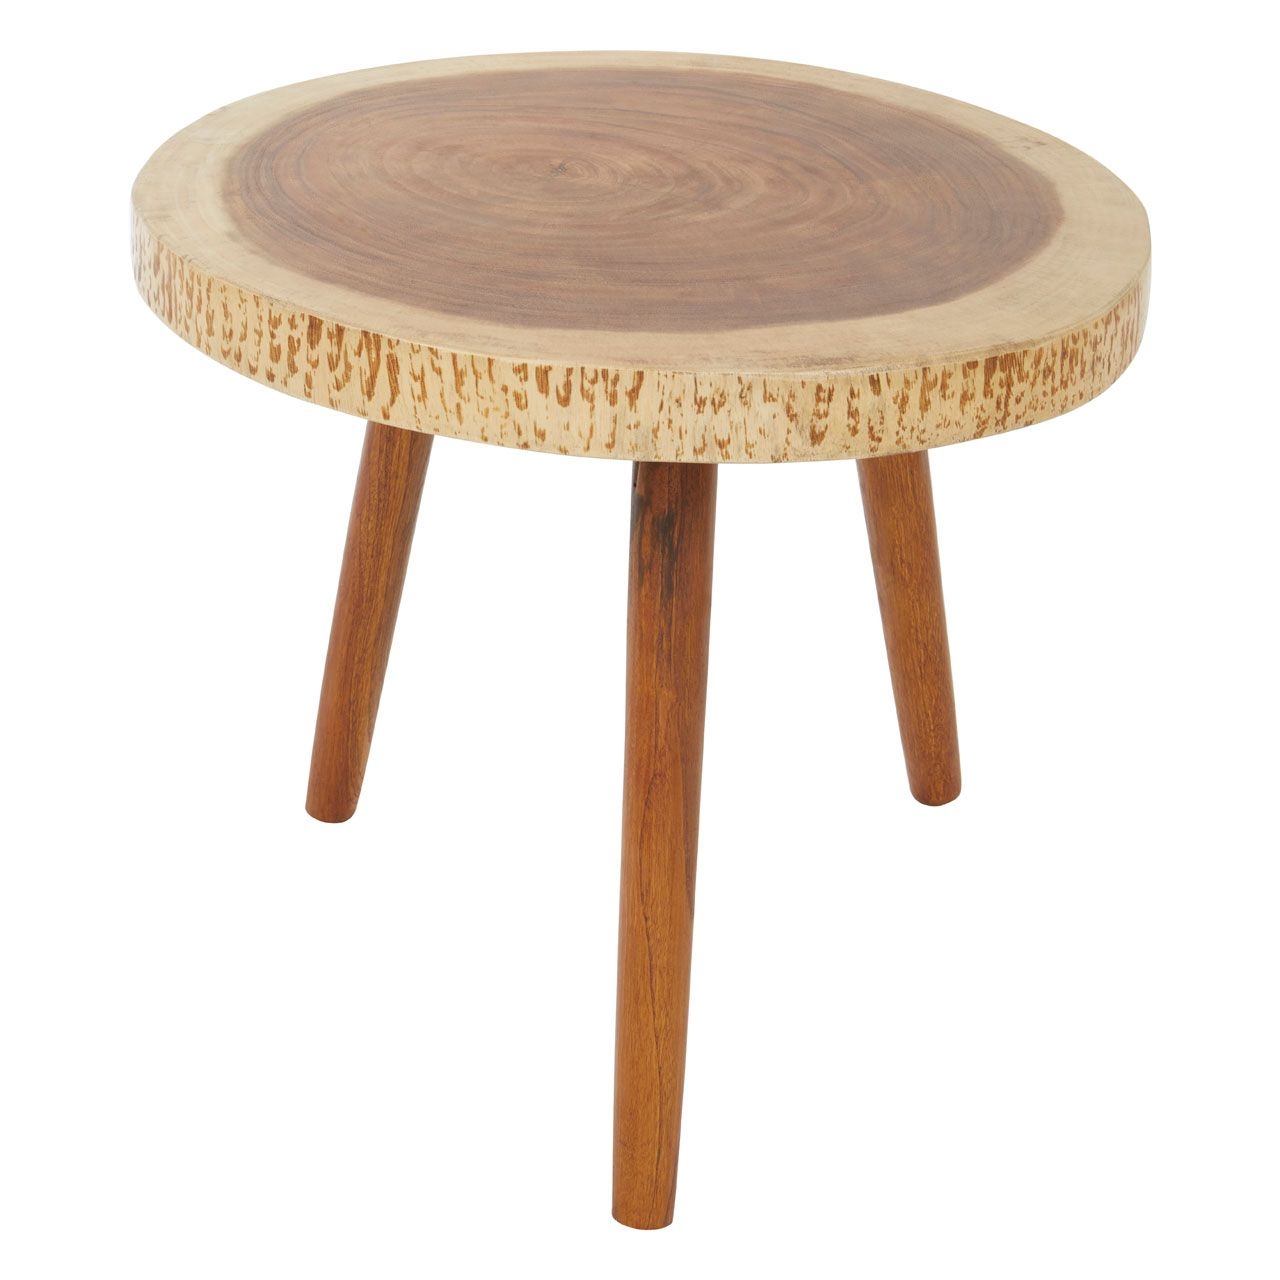 Surak Sonokeling Wood Top Side Table In Brown